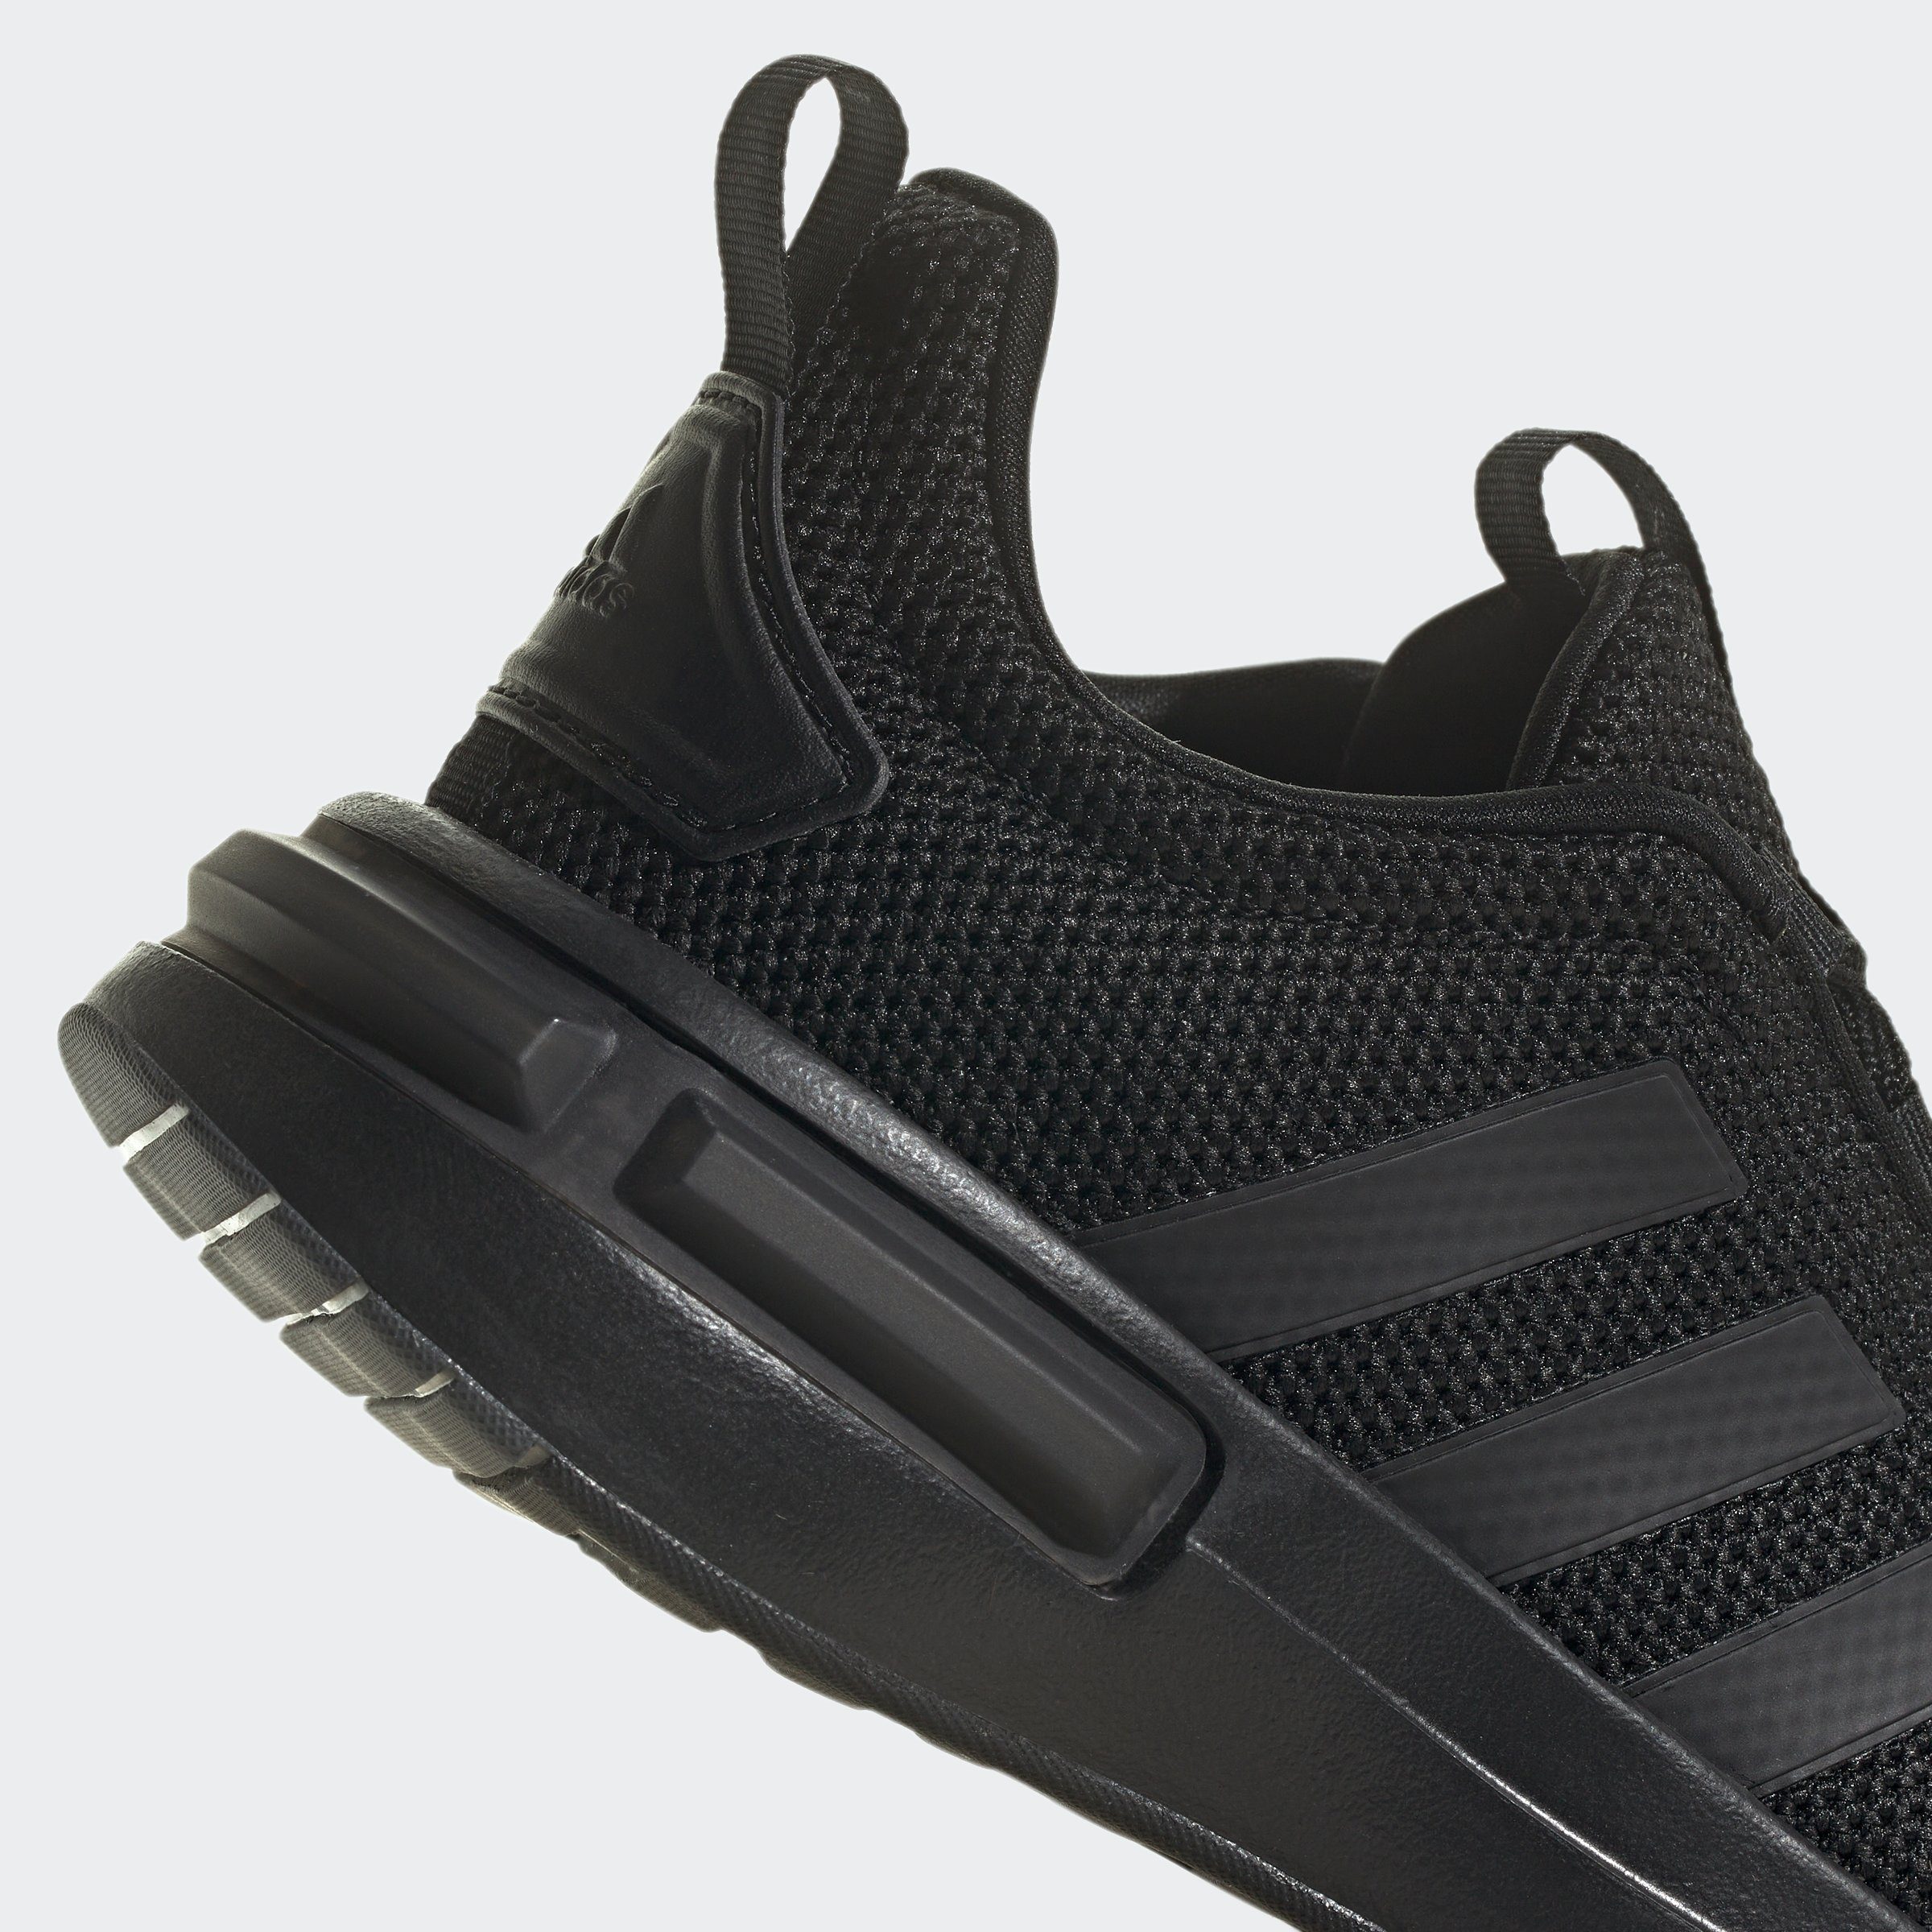 Core Black Sneaker adidas / Five Core Grey KIDS / Black Sportswear RACER TR23